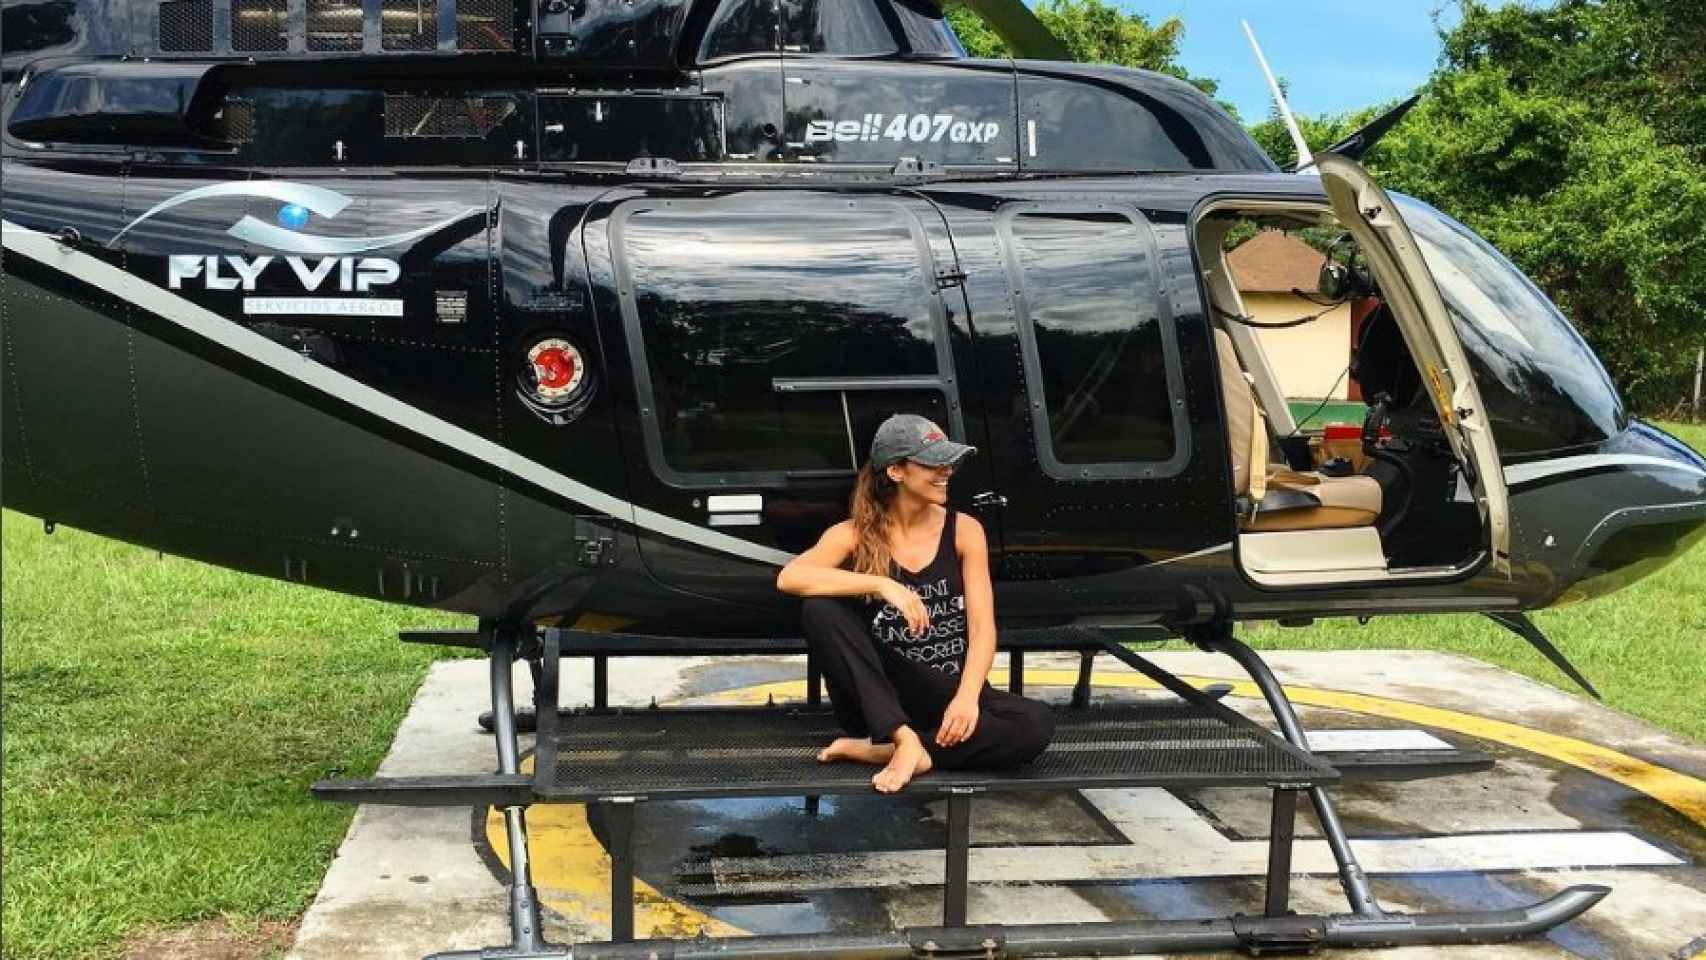 Lara Álvarez posa delante de un helicóptero en su Instagram.